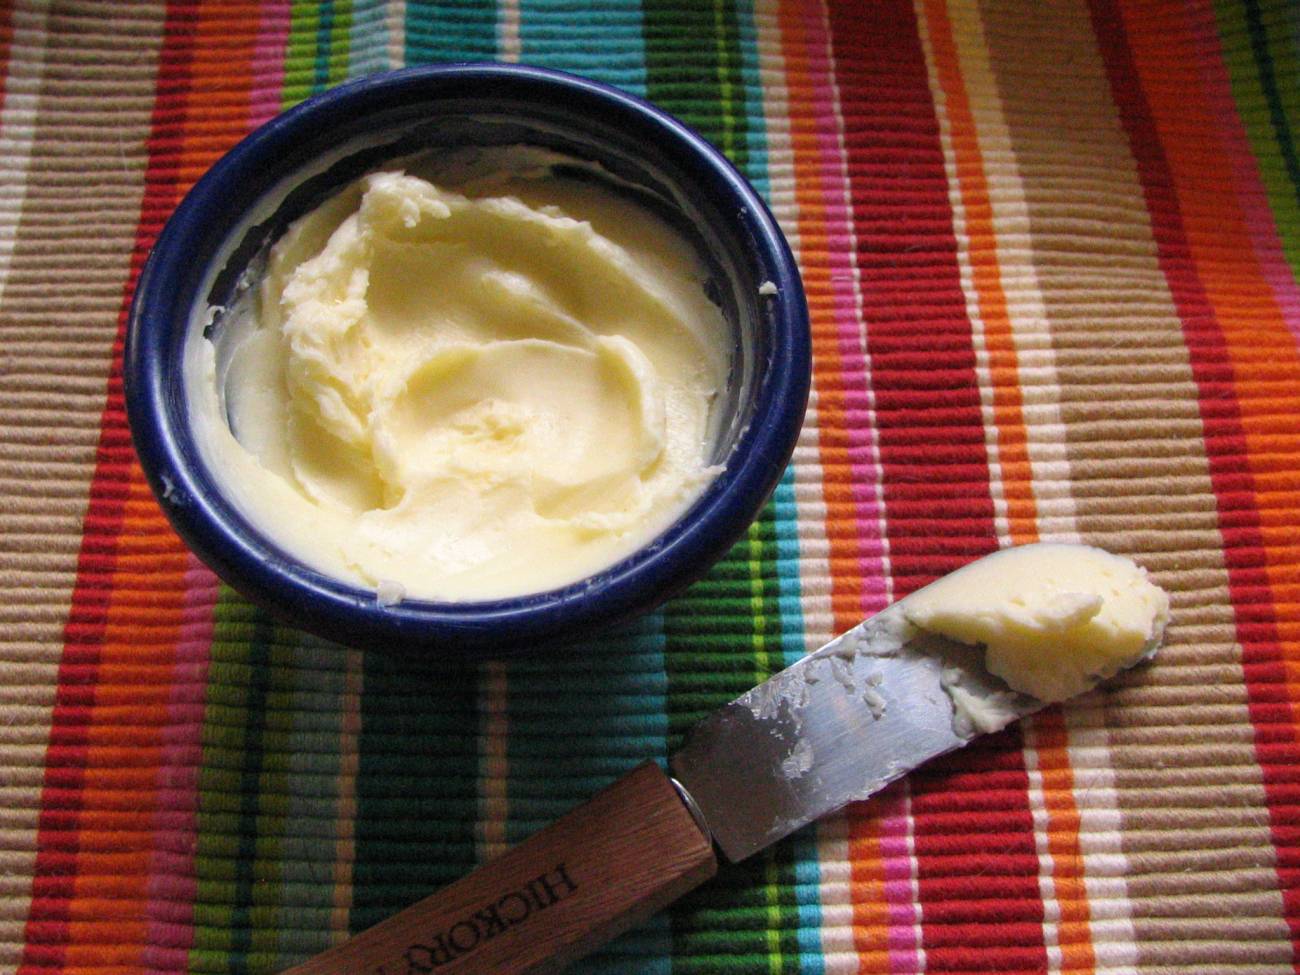 Se actualizan las normas de la mantequilla del Código Alimentario Español